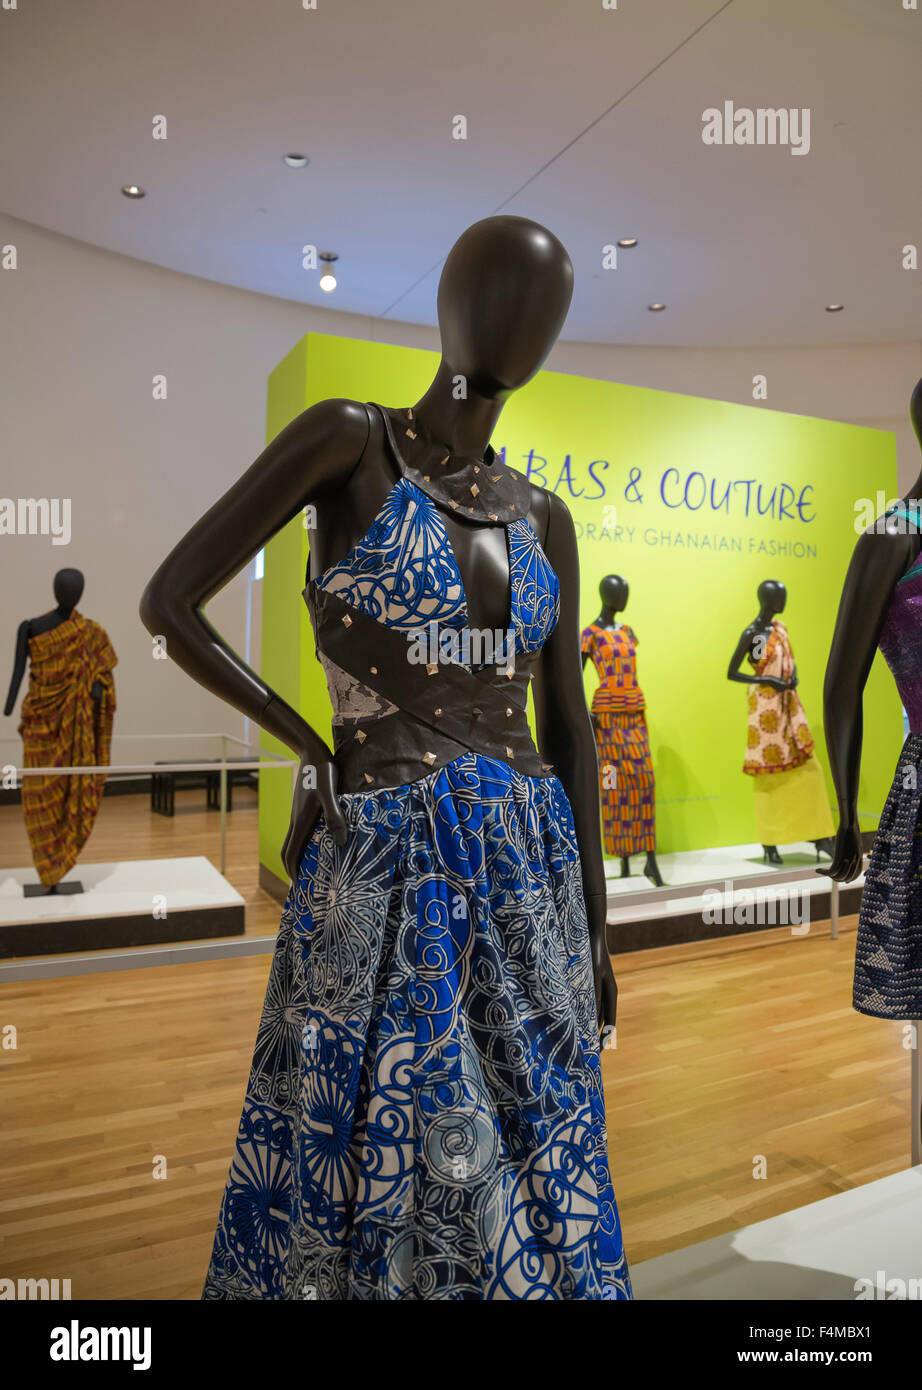 Kabas & Couture, mode ghanéenne contemporaine Banque D'Images